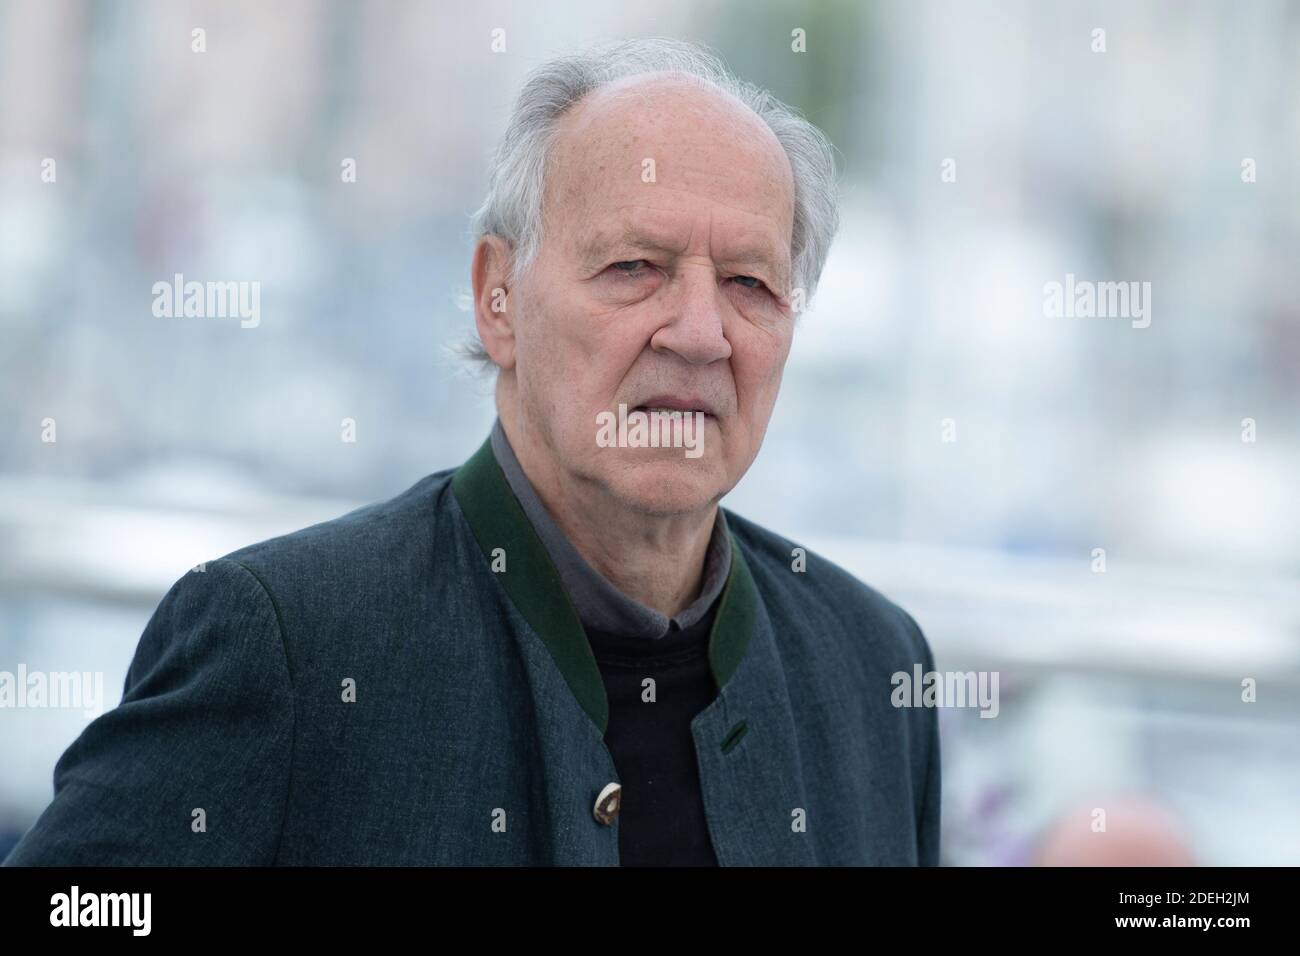 Werner Herzog partecipa al Family Romance Photocall nell'ambito del 72esimo Festival Internazionale del Cinema di Cannes, in Francia, il 19 maggio 2019. Foto di Aurore Marechal/ABACAPRESS.COM Foto Stock